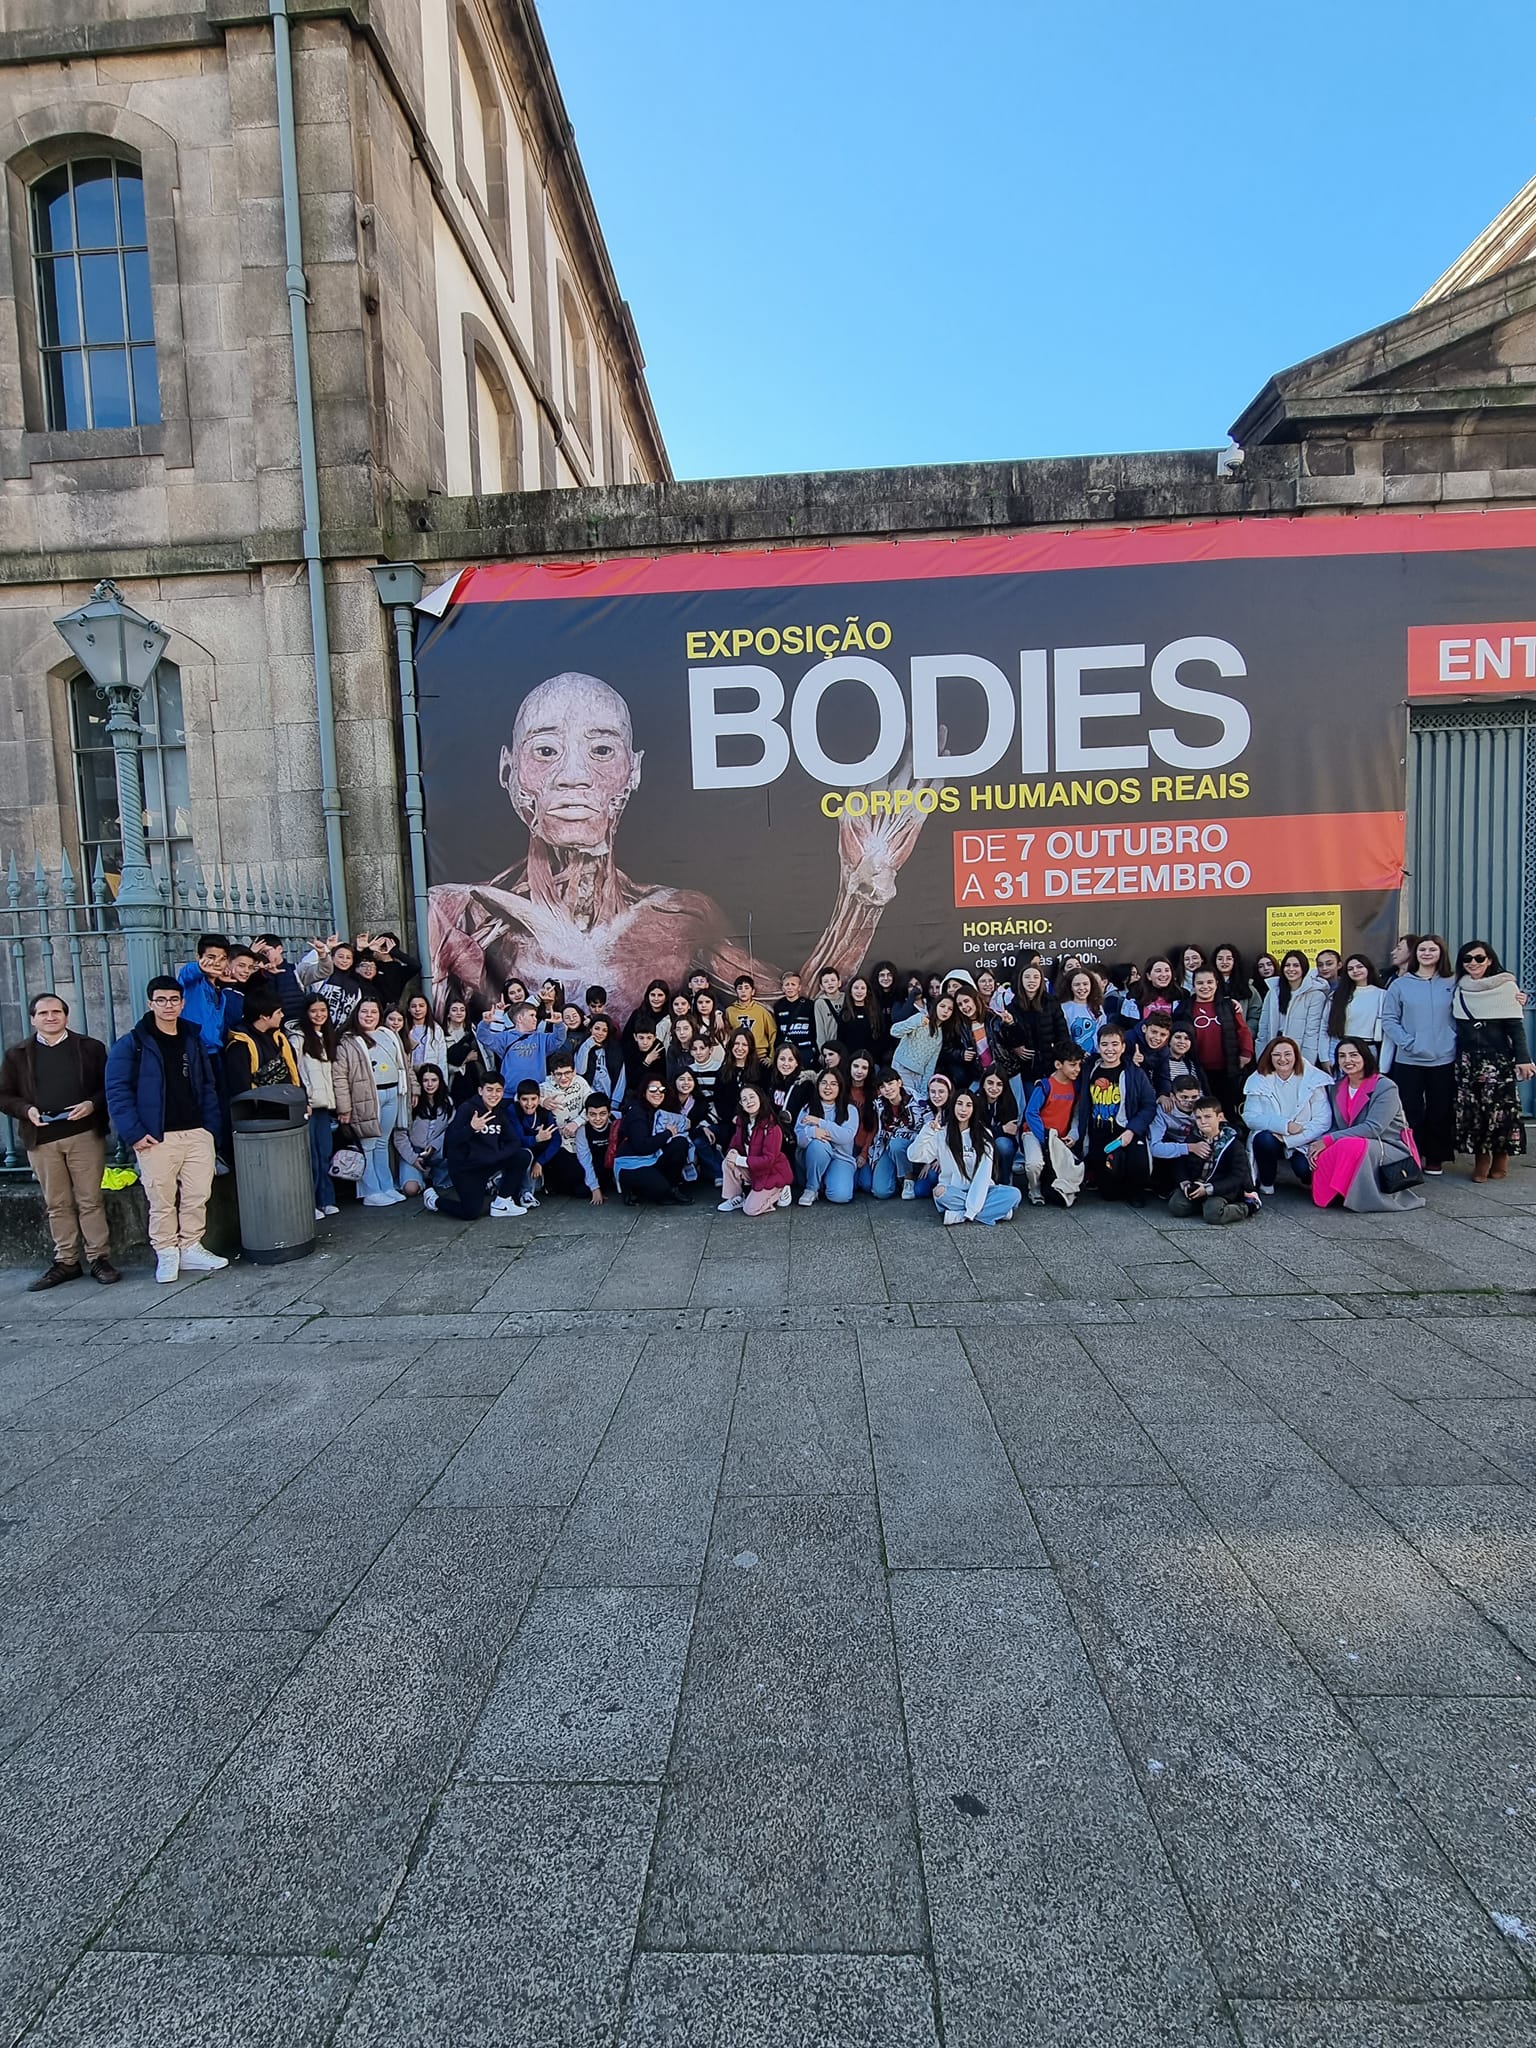 bodies